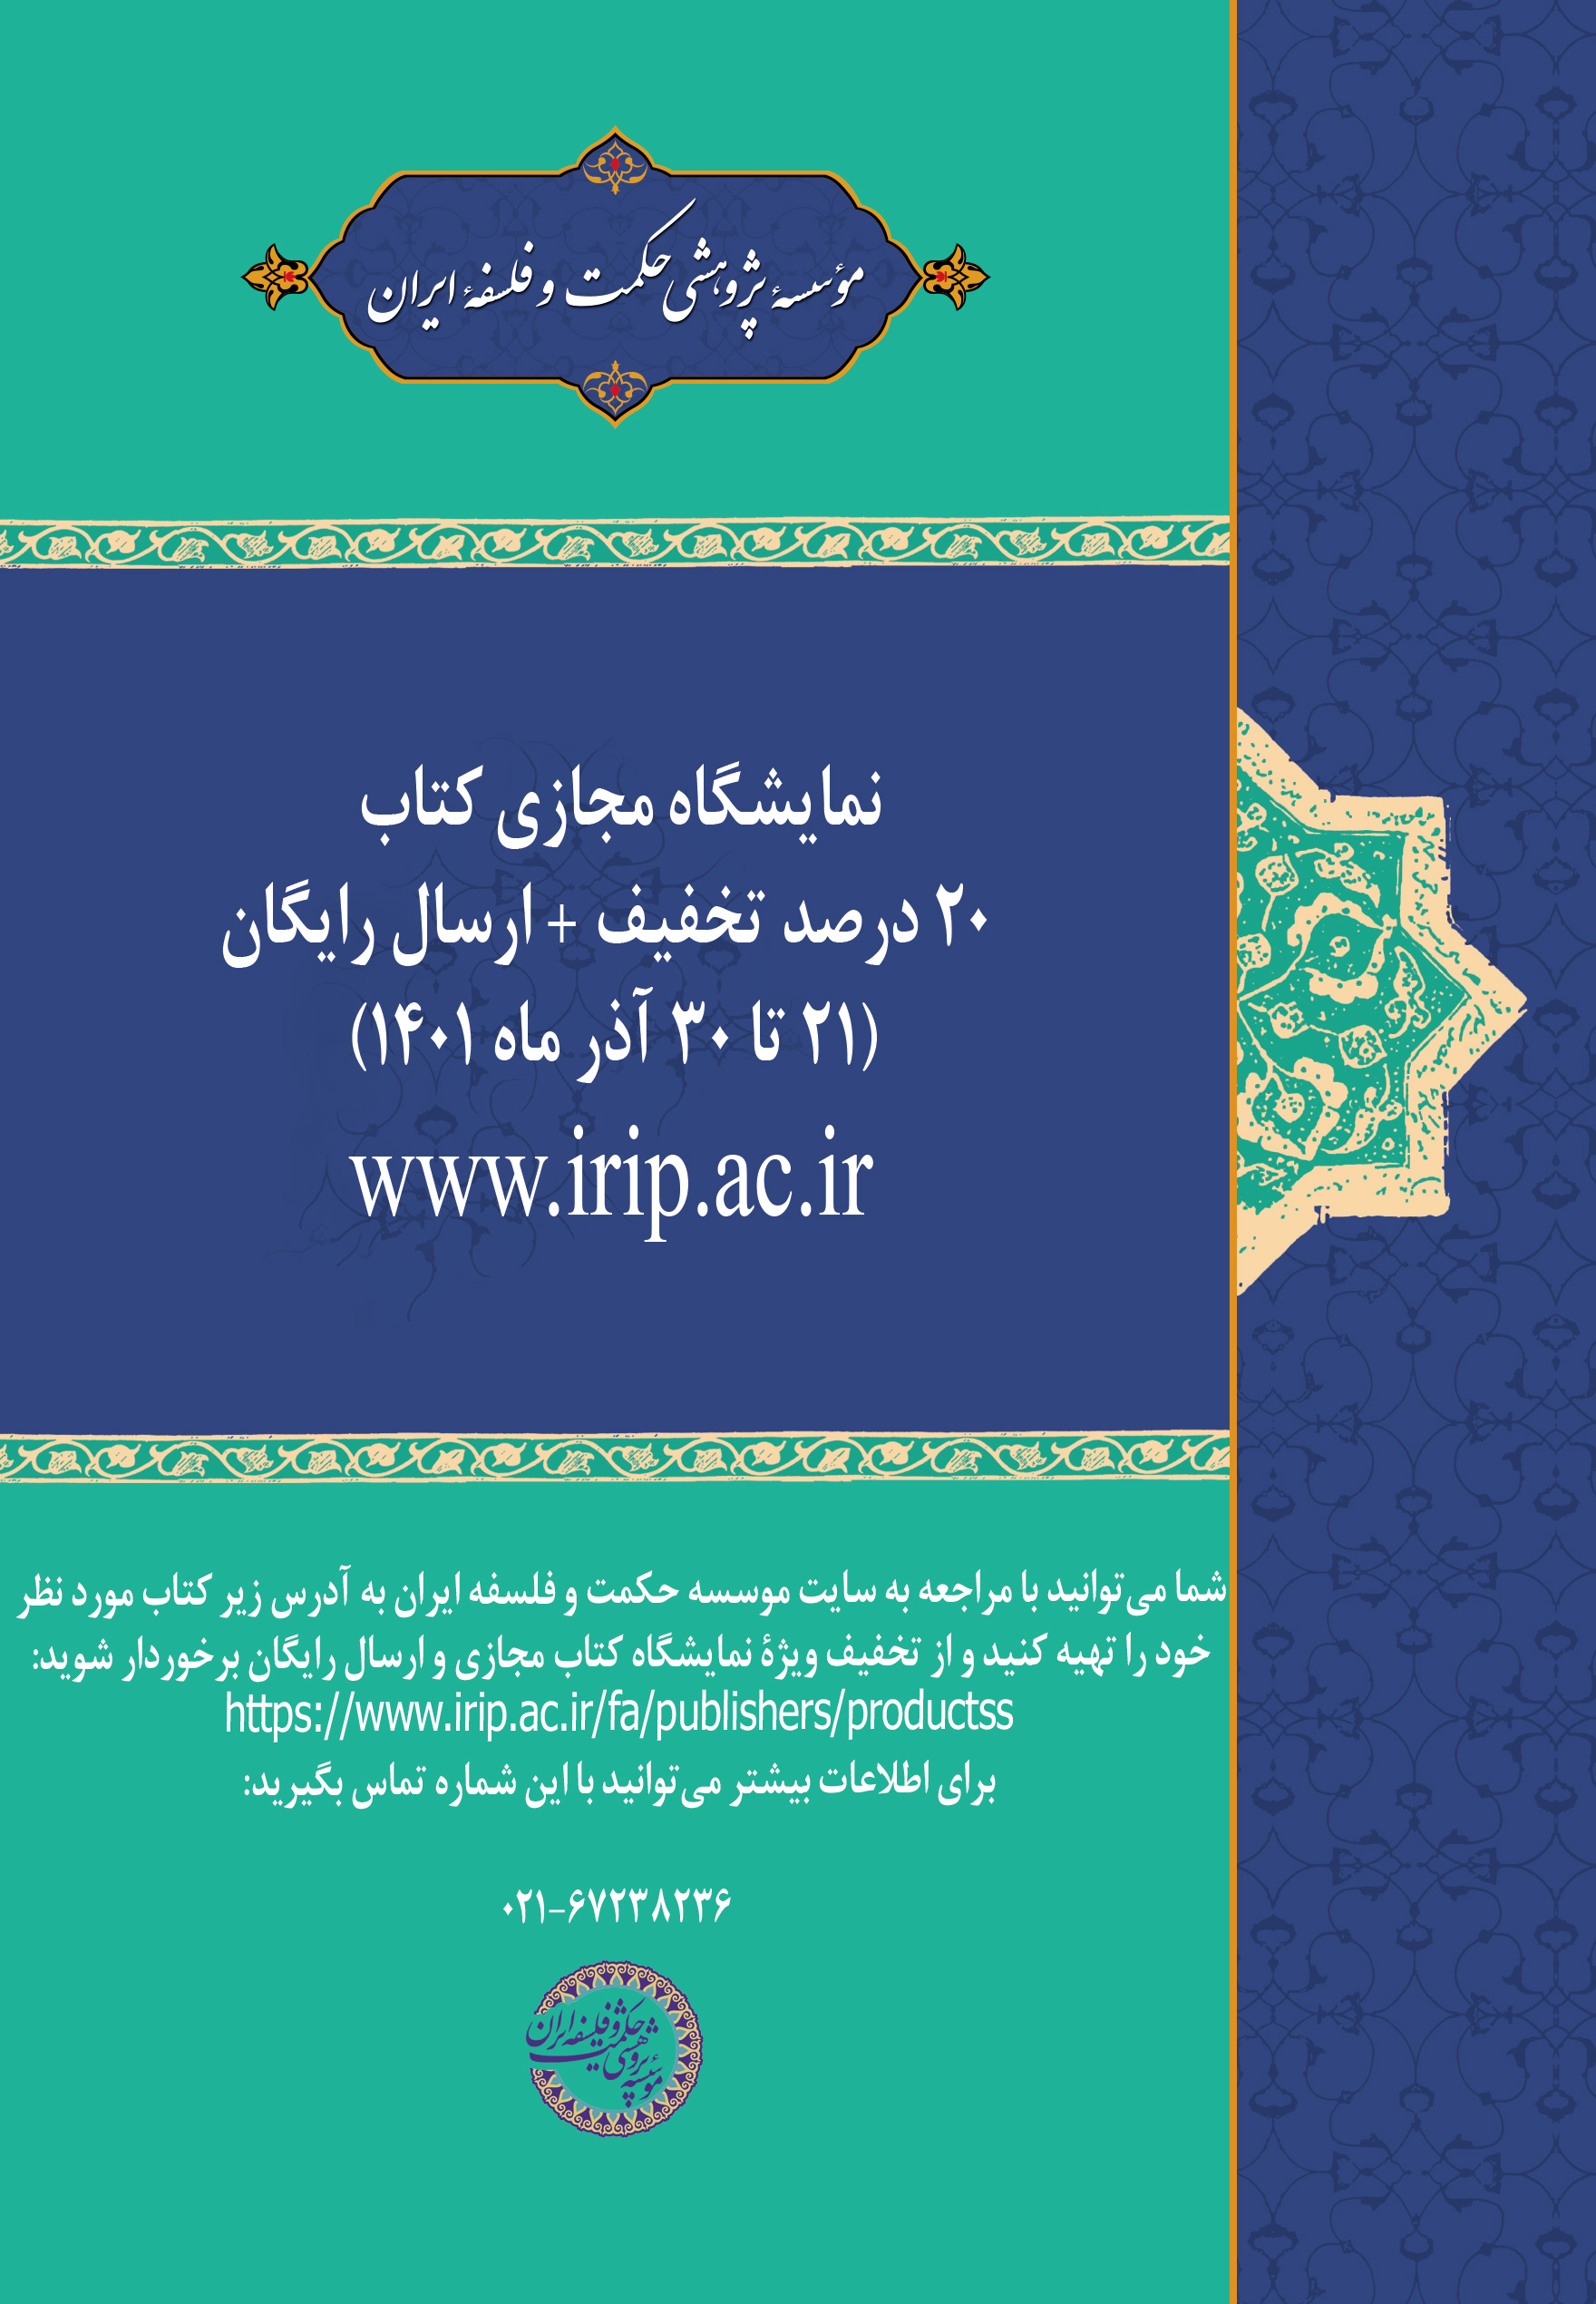 مؤسسه پژوهشی حکمت و فلسفه ایران تقدیم می‌کند: نمایشگاه مجازی کتاب با تخفیف ویژه